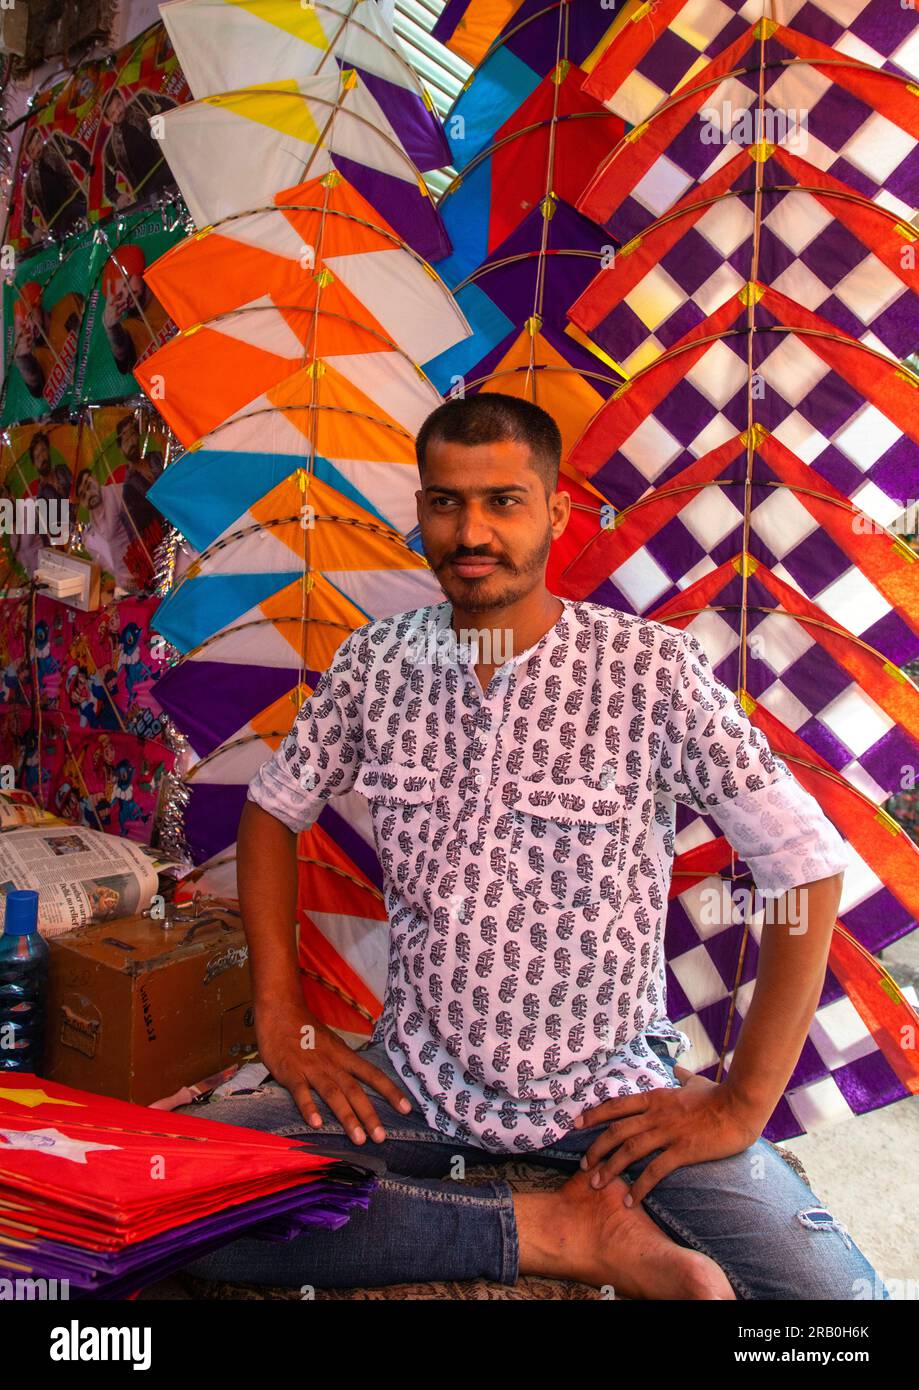 Indian seller in a kite shop in old Delhi, Delhi, New Delhi, India Stock Photo